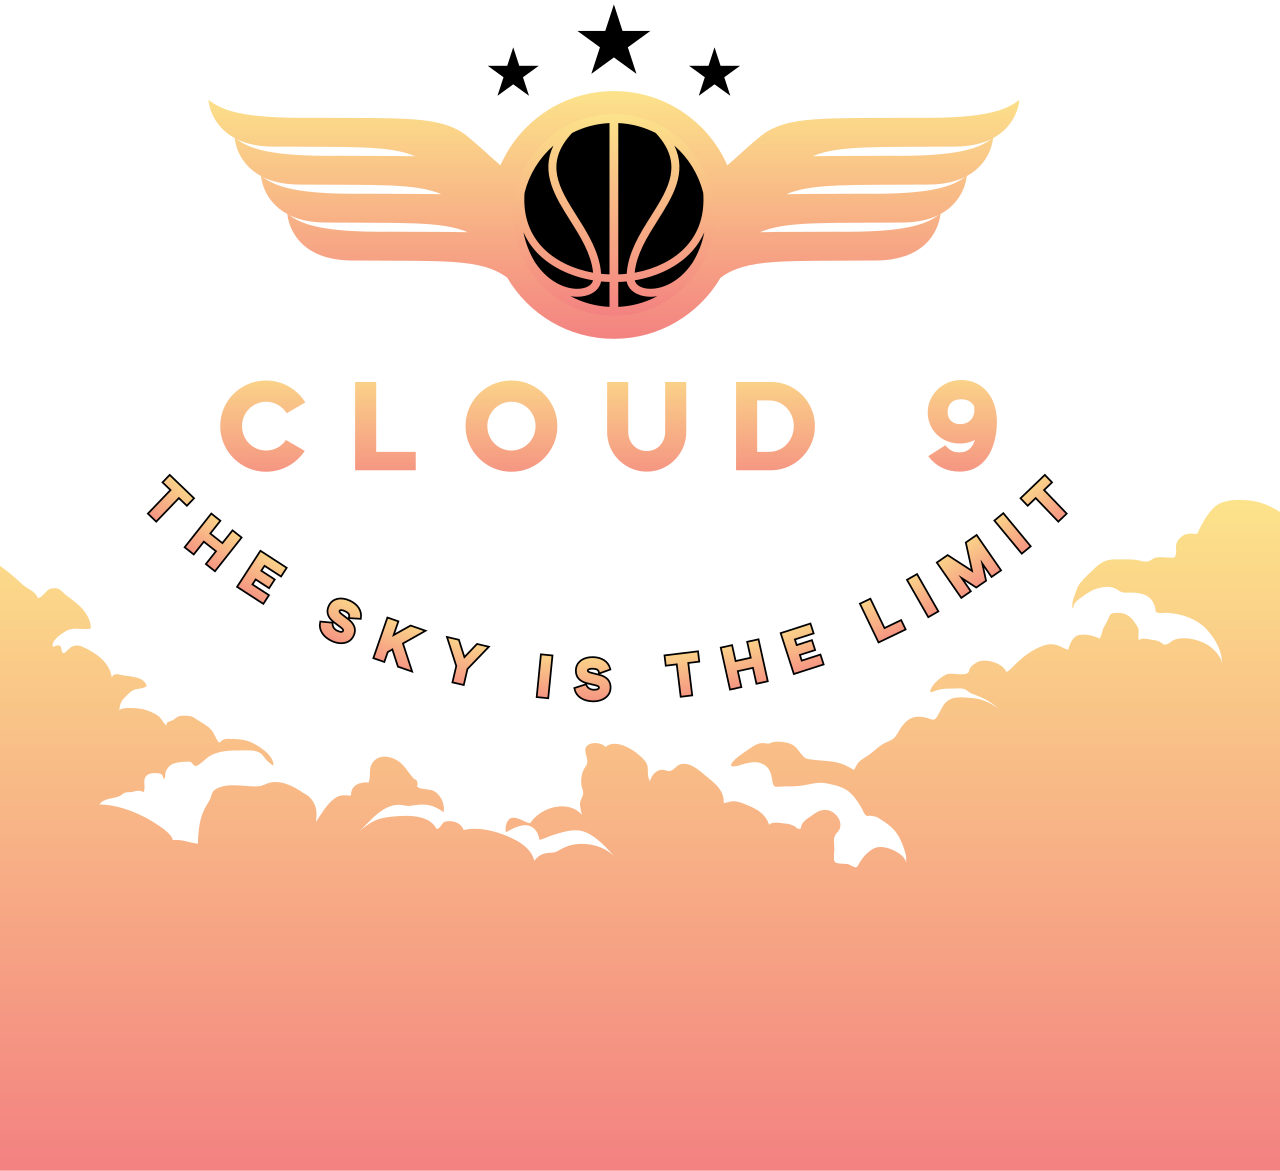 Cloud 9 's web page